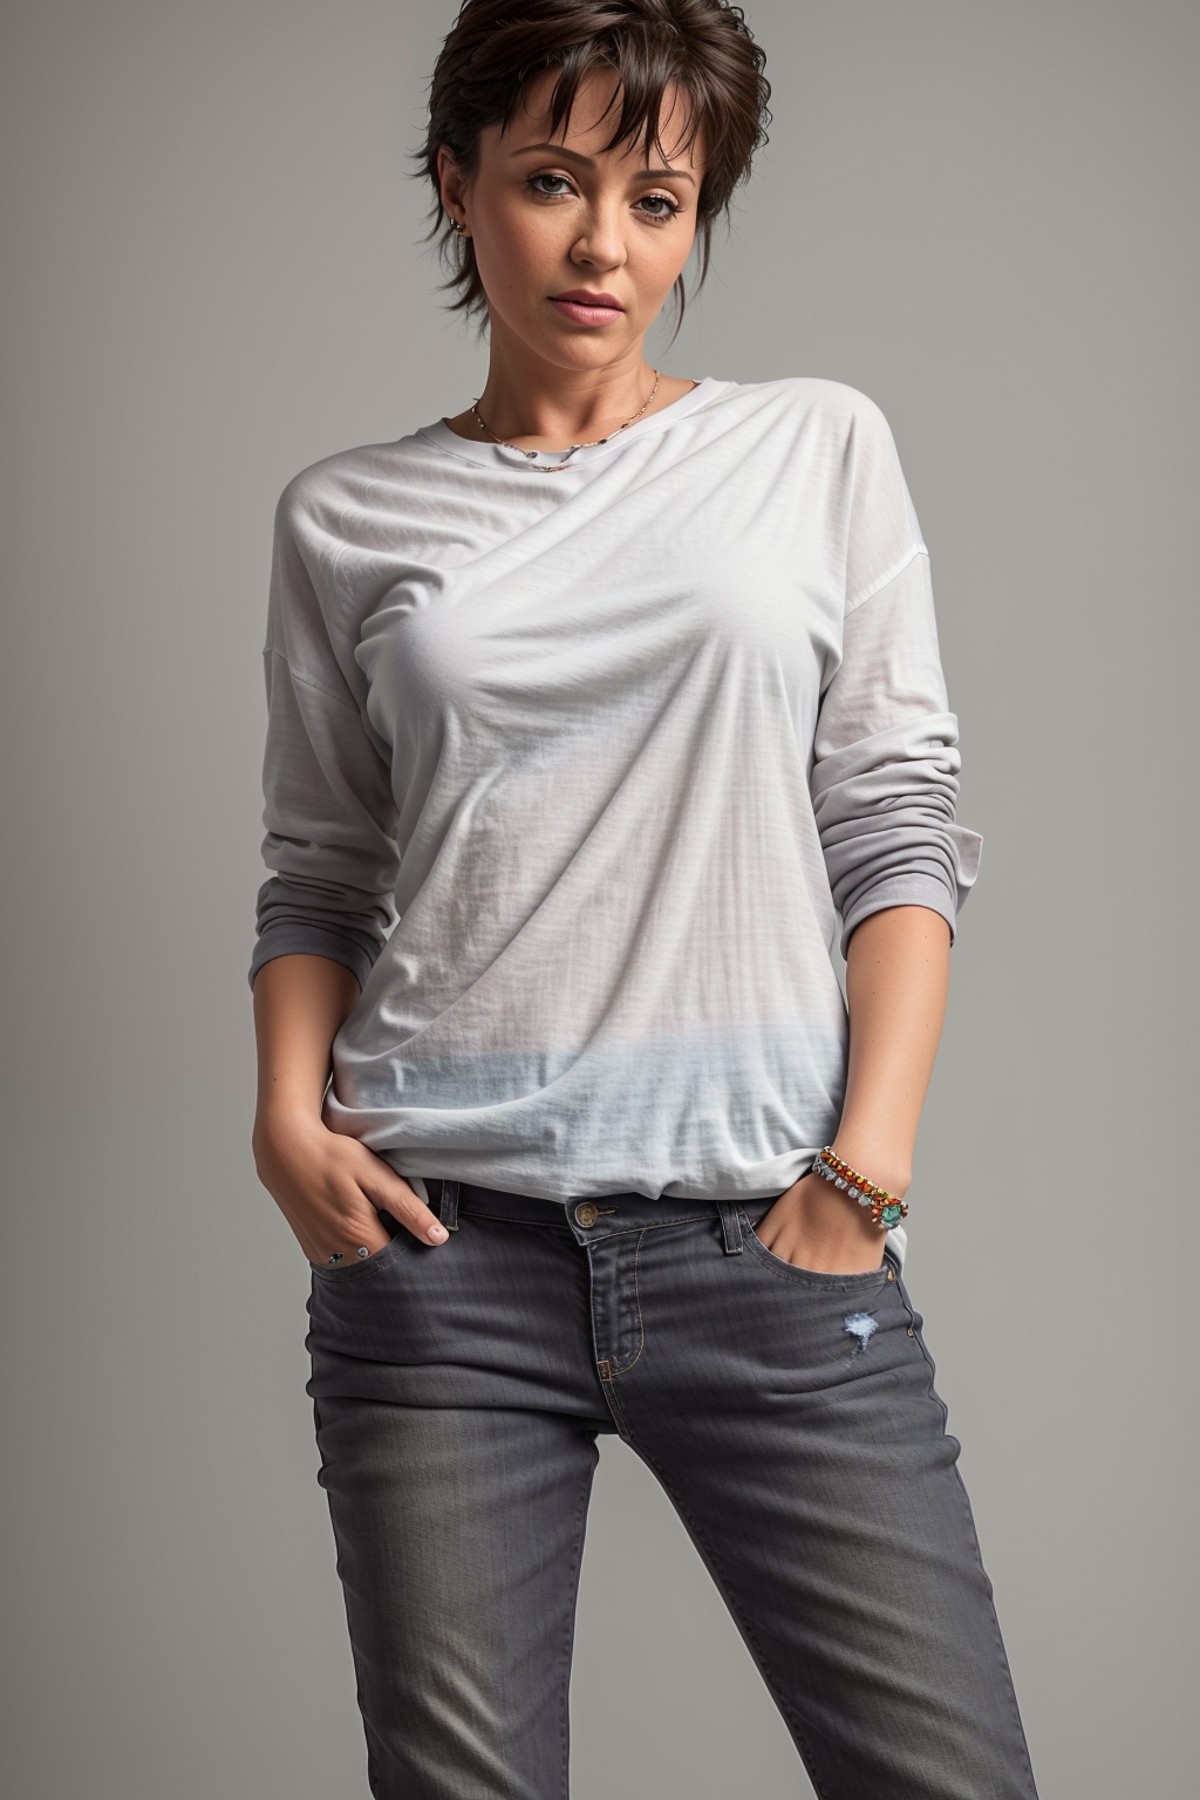 GS-Boyish modelshoot style photo of sylvesterstallone <lora:SylvesterStallone_SD1.5_V1:0.5> standing shirt jeans (blank gr...